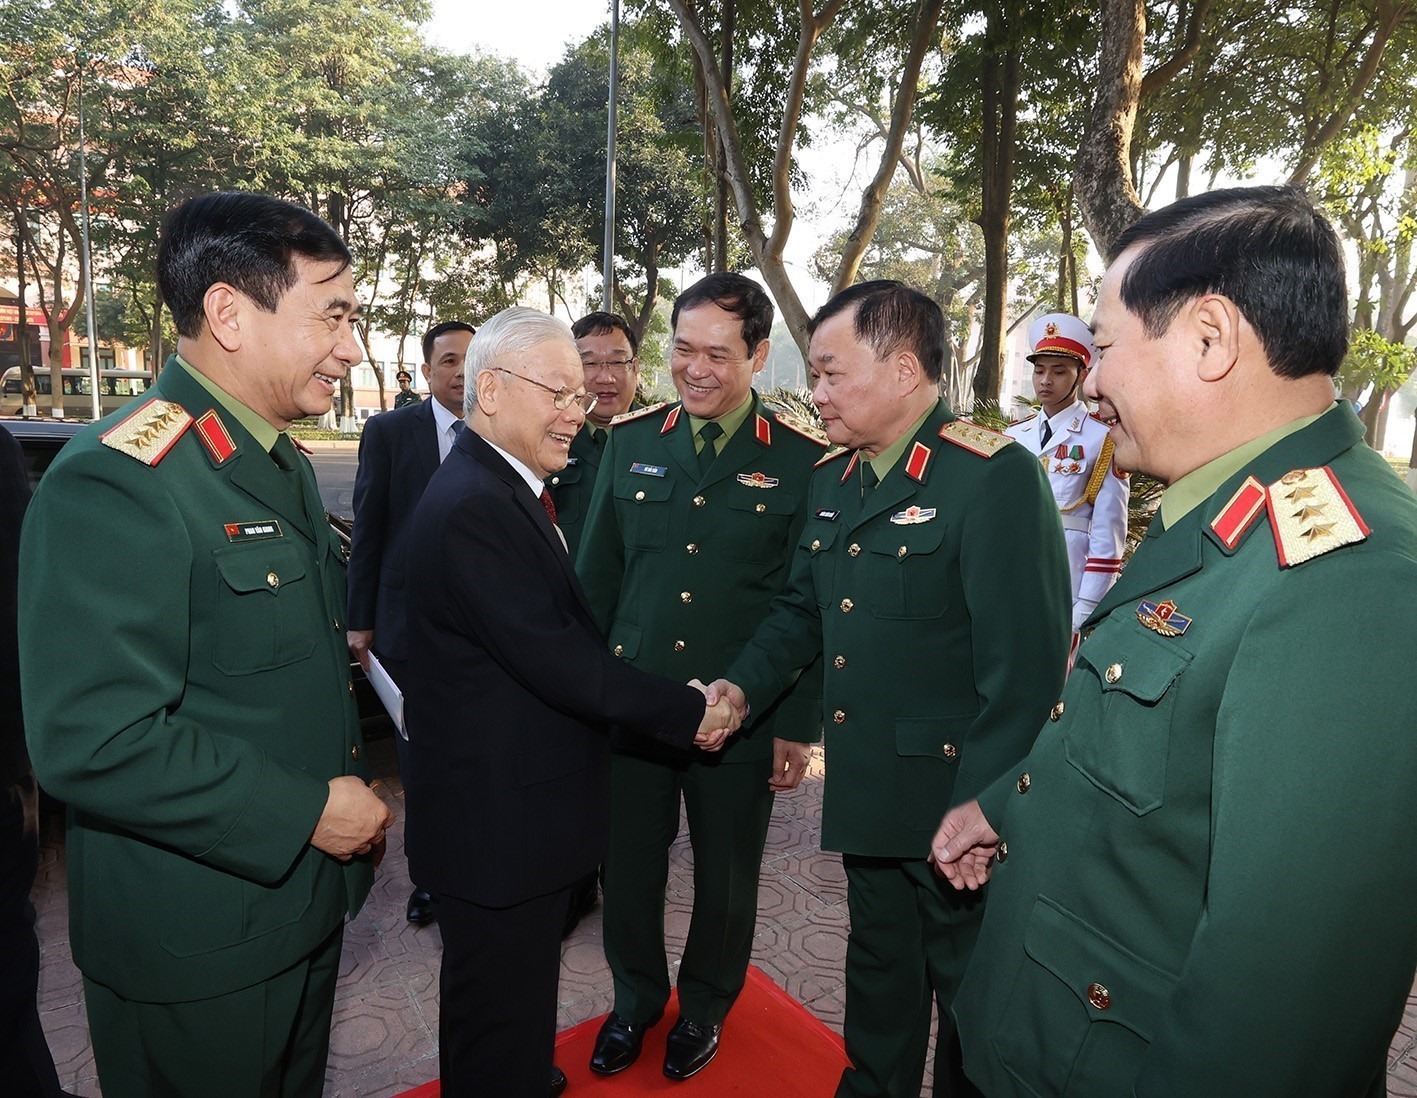 Tổng Bí thư Nguyễn Phú Trọng cùng các đại biểu dự Hội nghị Quân chính toàn quân 2022. Ảnh: Trọng Đức